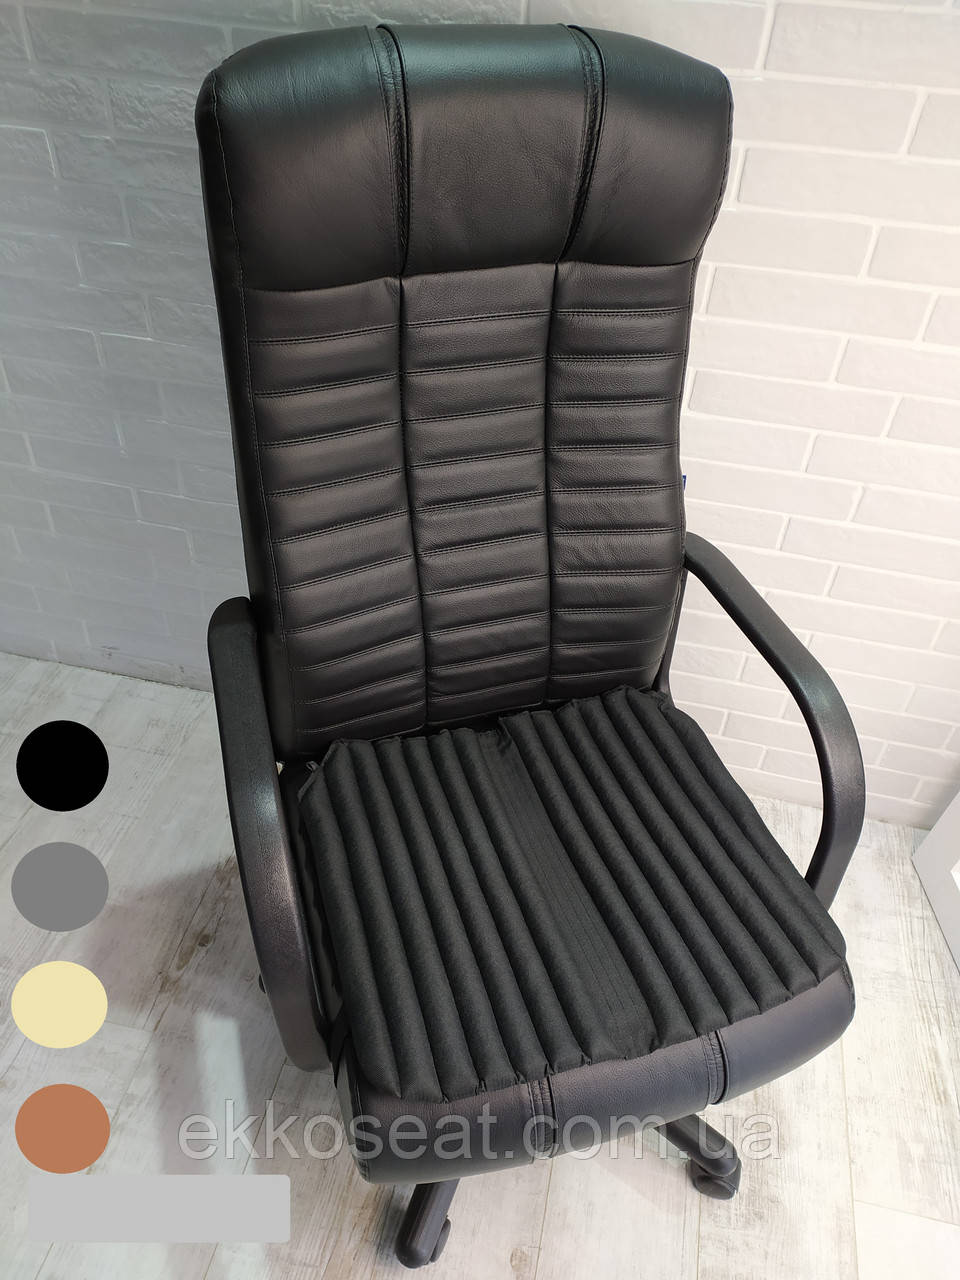 Ортопедичні подушки, чохли для сидіння на офісне крісло керівника EKKOSEAT. Універсальні